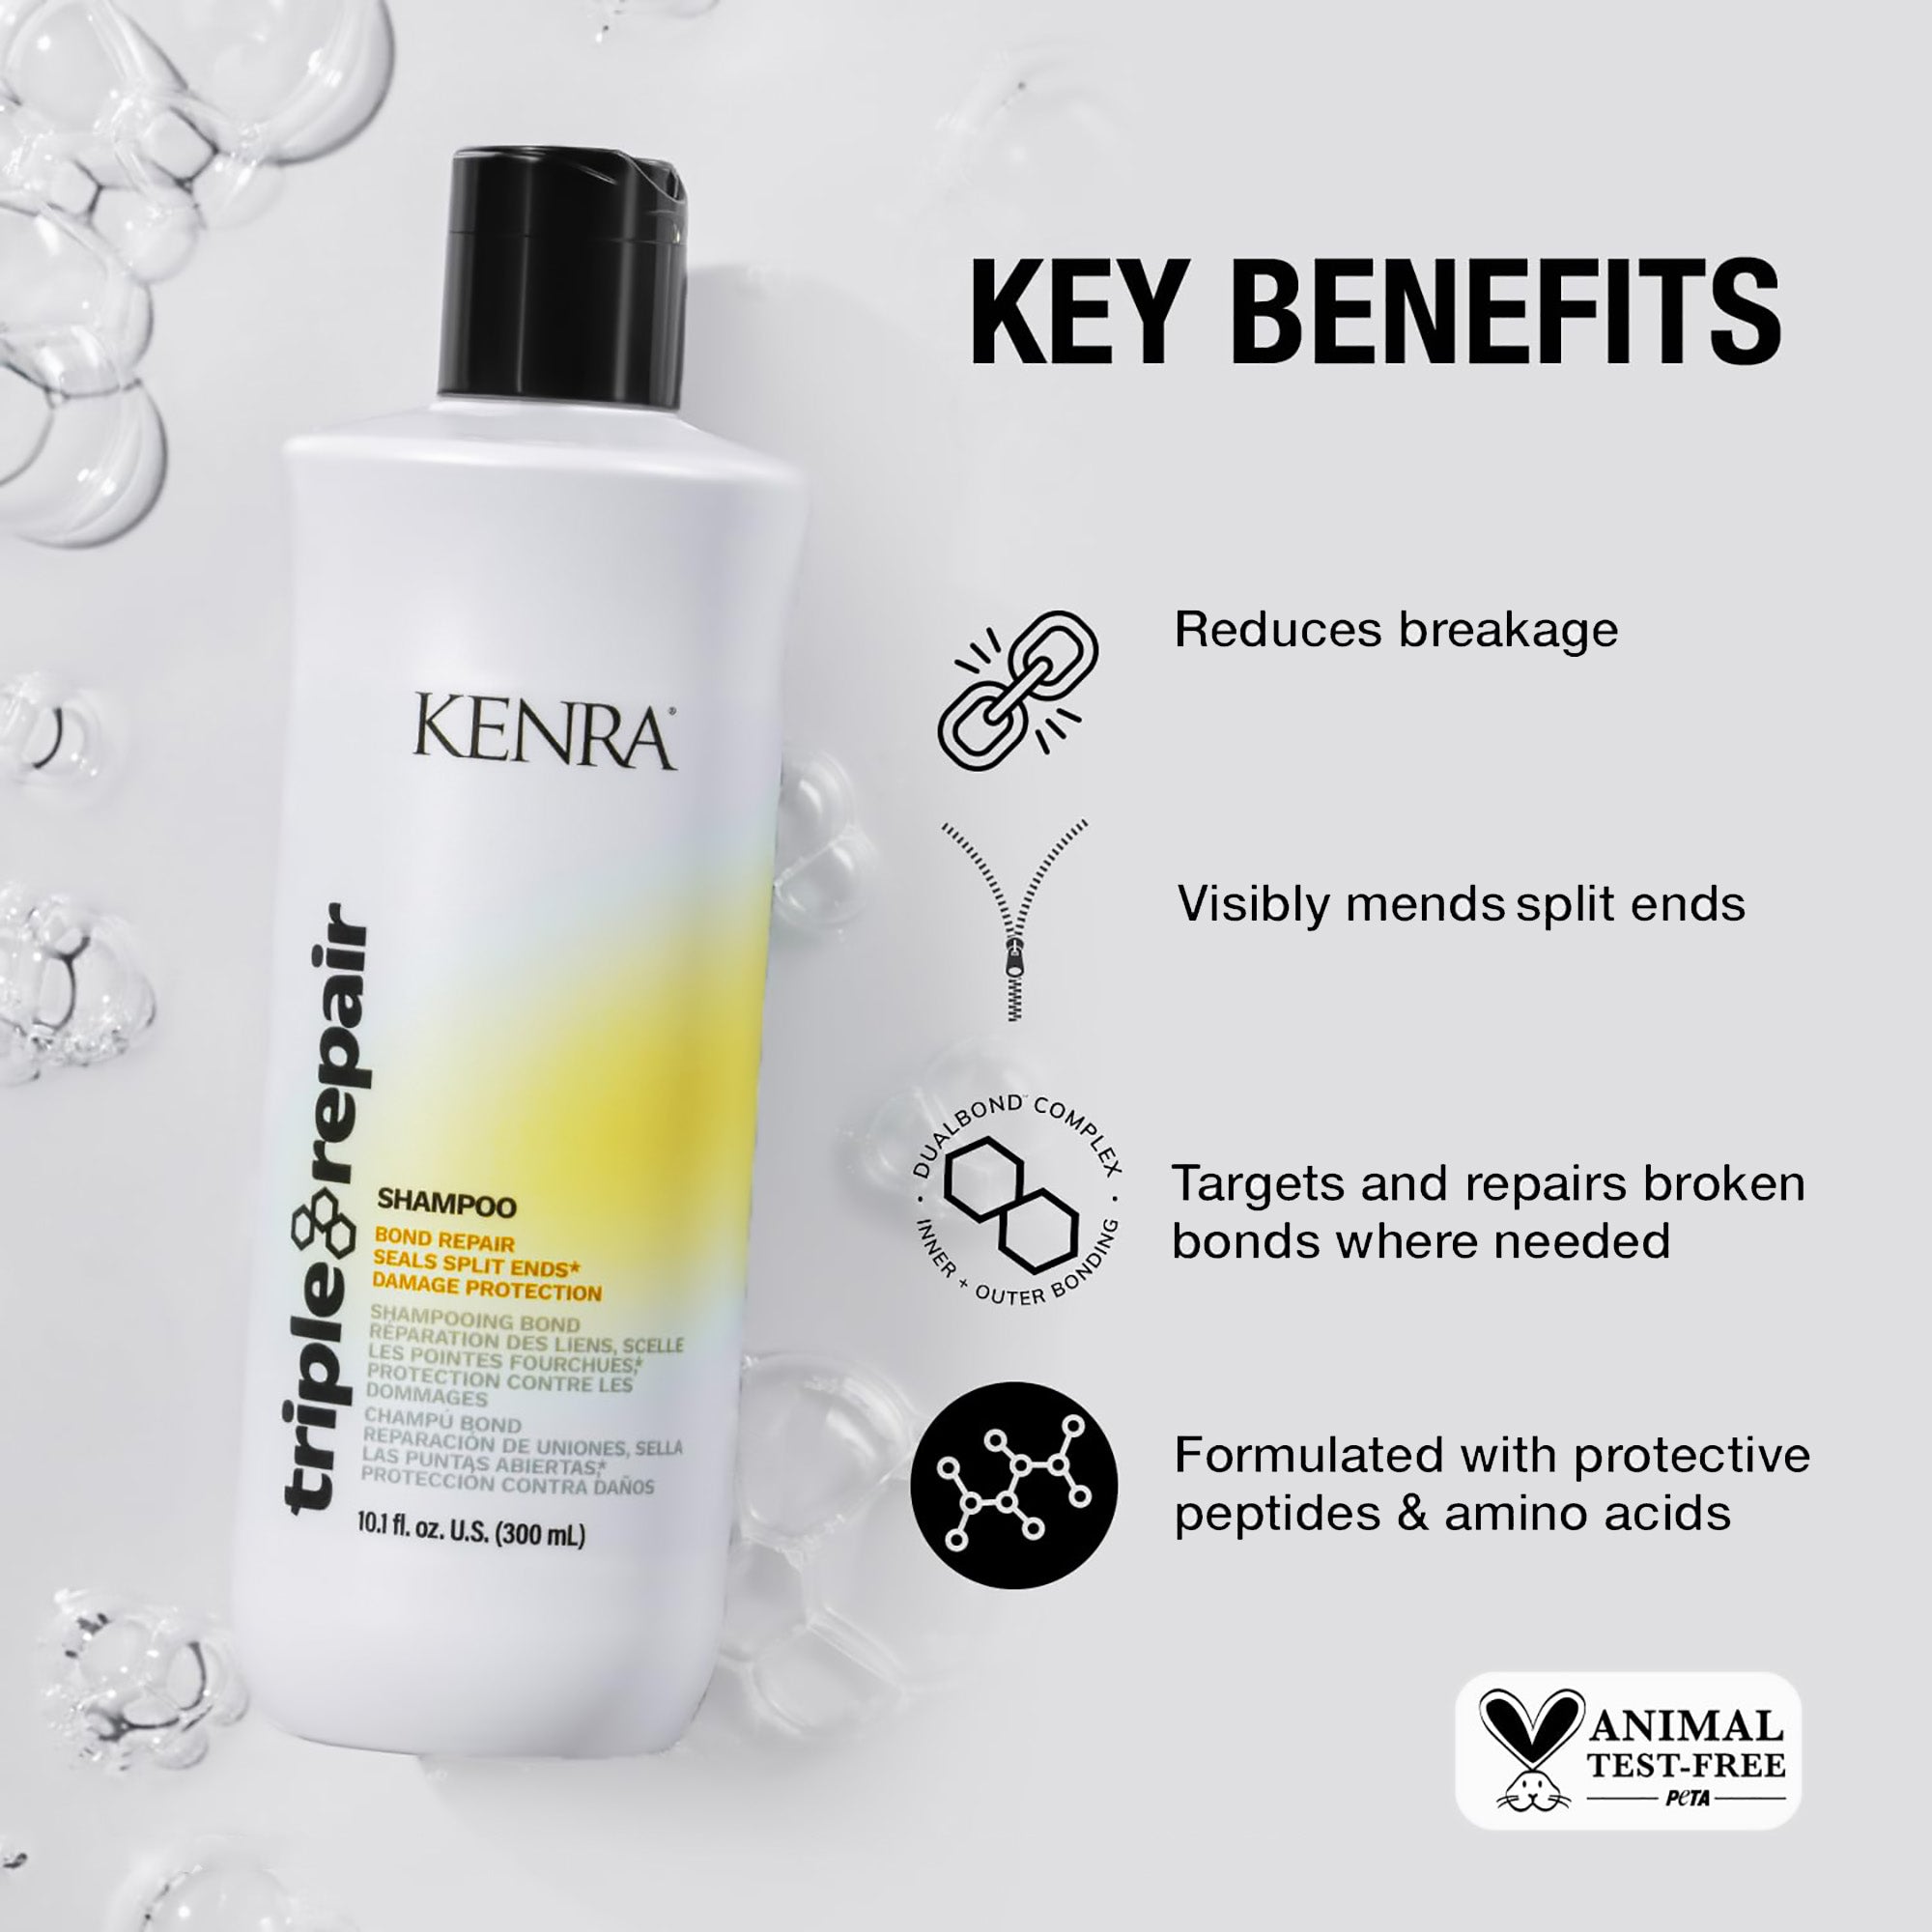 Kenra Professional Triple Bond Repair Shampoo - 10oz / 10OZ